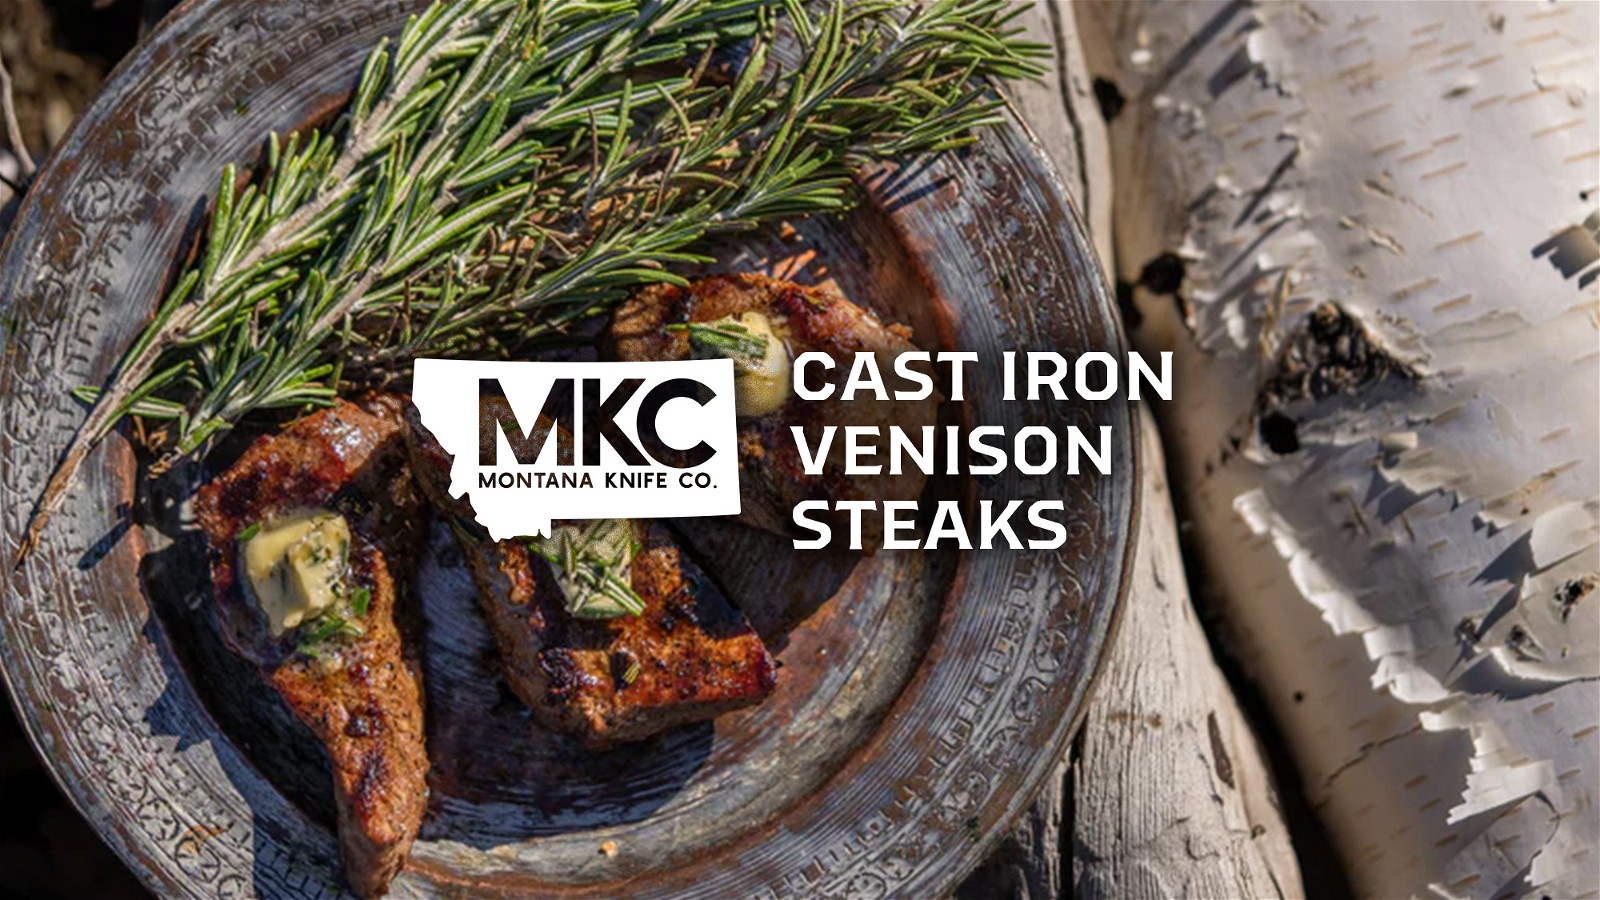 Image of Cast Iron Venison Steaks